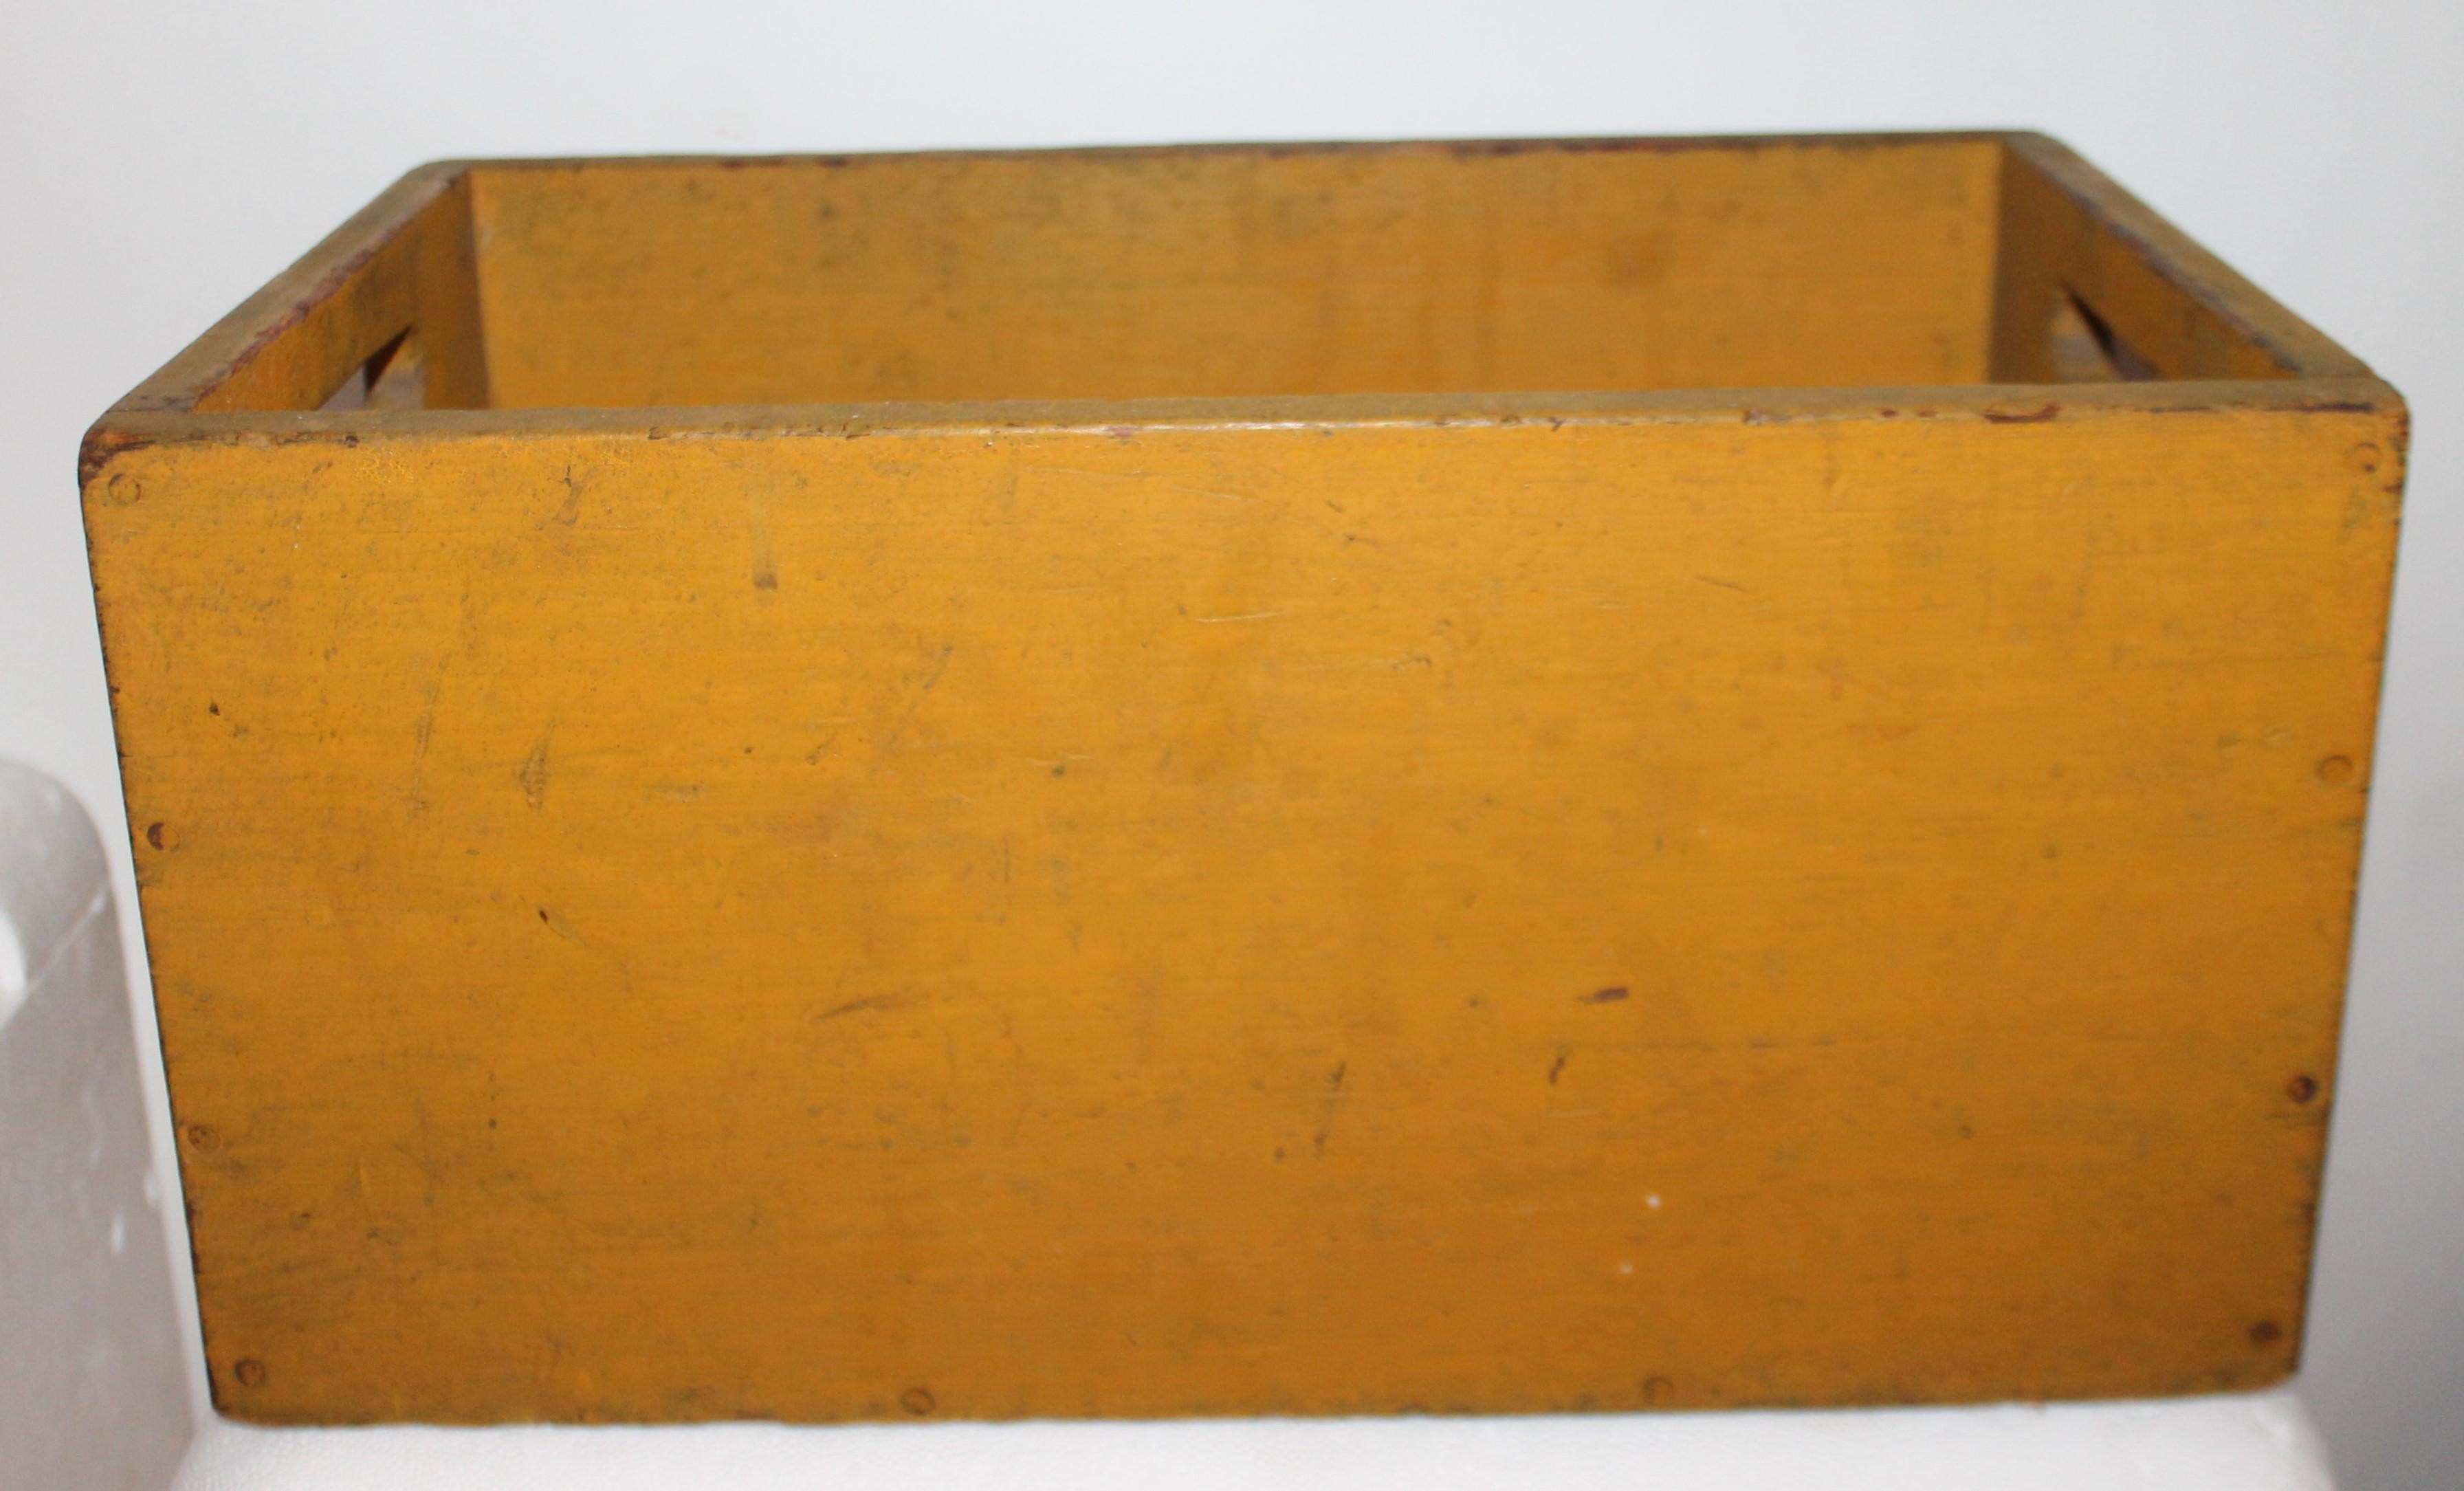 boîte à double poignée peinte d'origine du 19e siècle. Cette boîte ou caisse ancienne est en bon état et conserve la surface peinte jaune chrome d'origine.